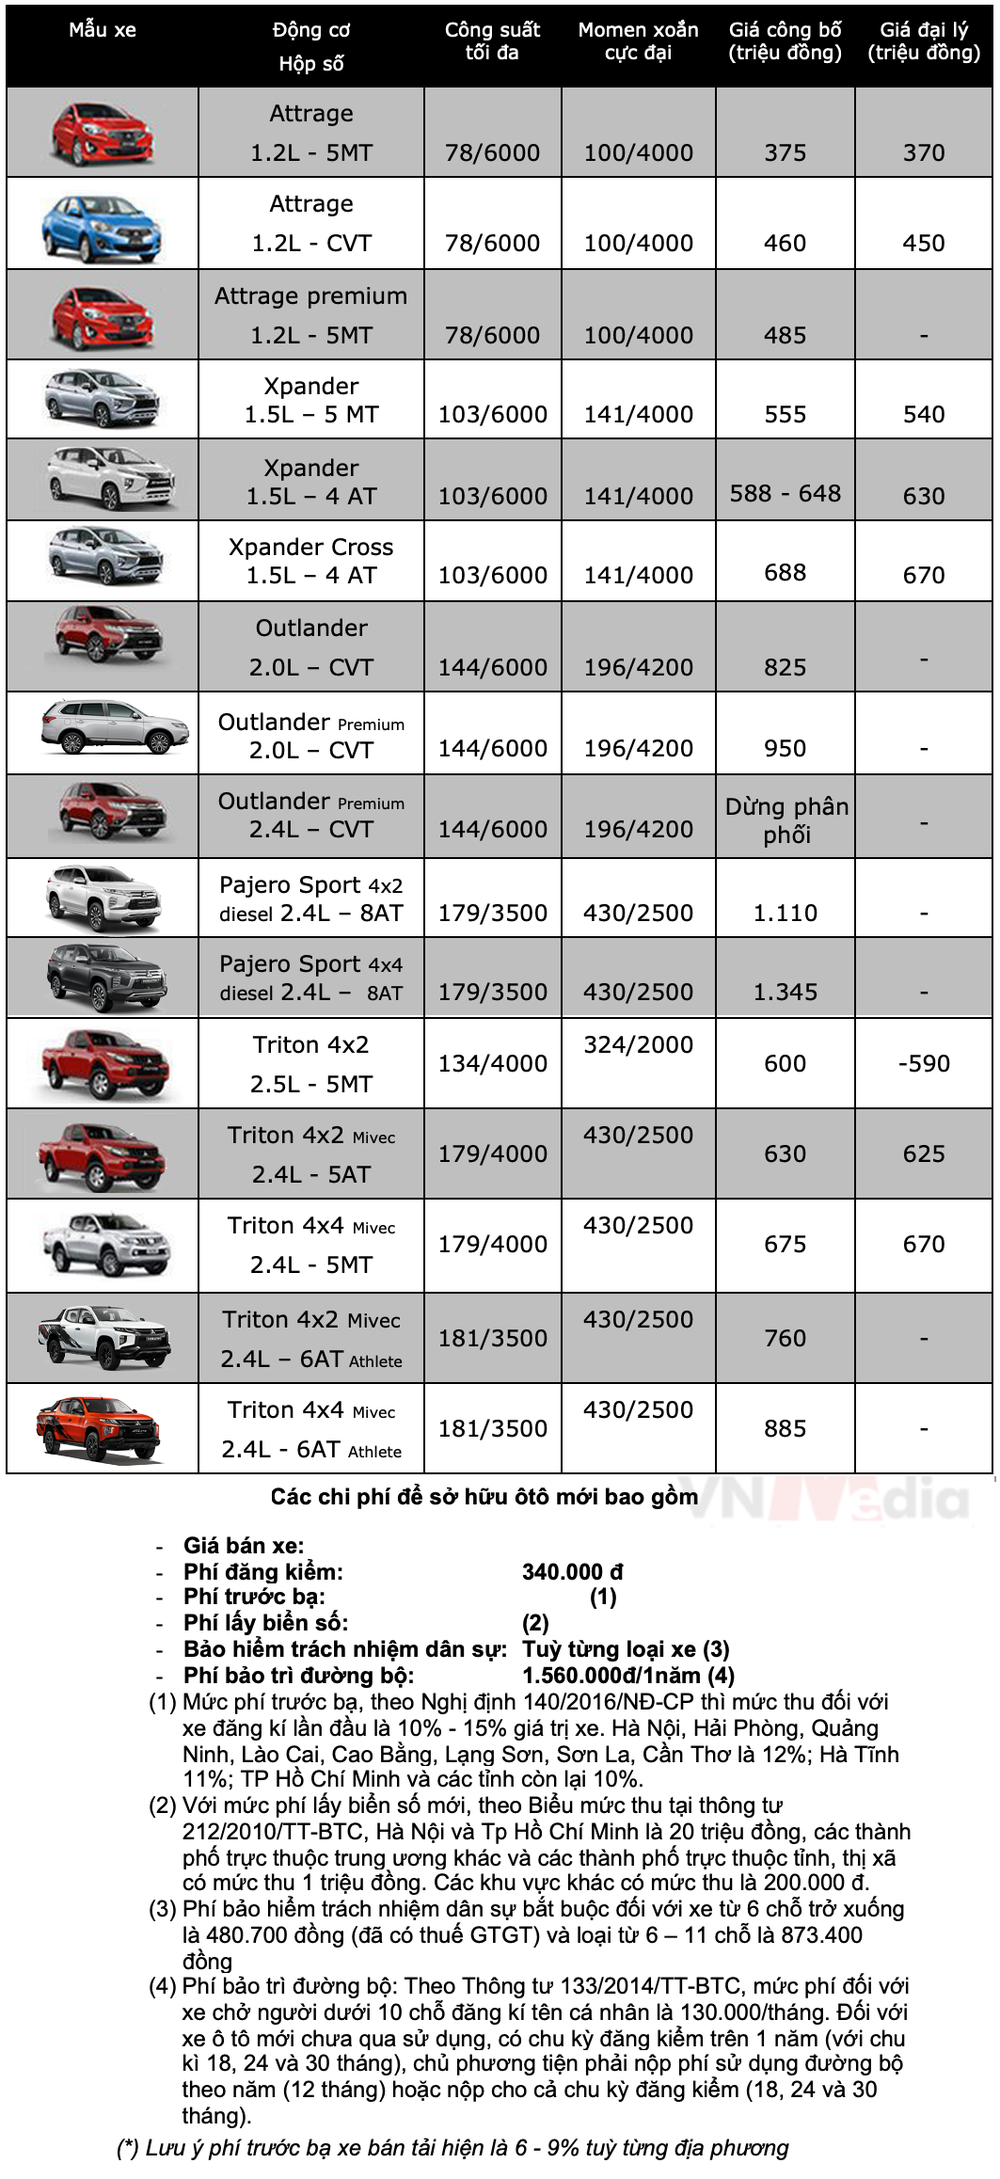 Bảng giá xe Mitsubishi tháng 12: Mitsubishi Attrage nhận ưu đãi gần 17 triệu đồng - Ảnh 3.